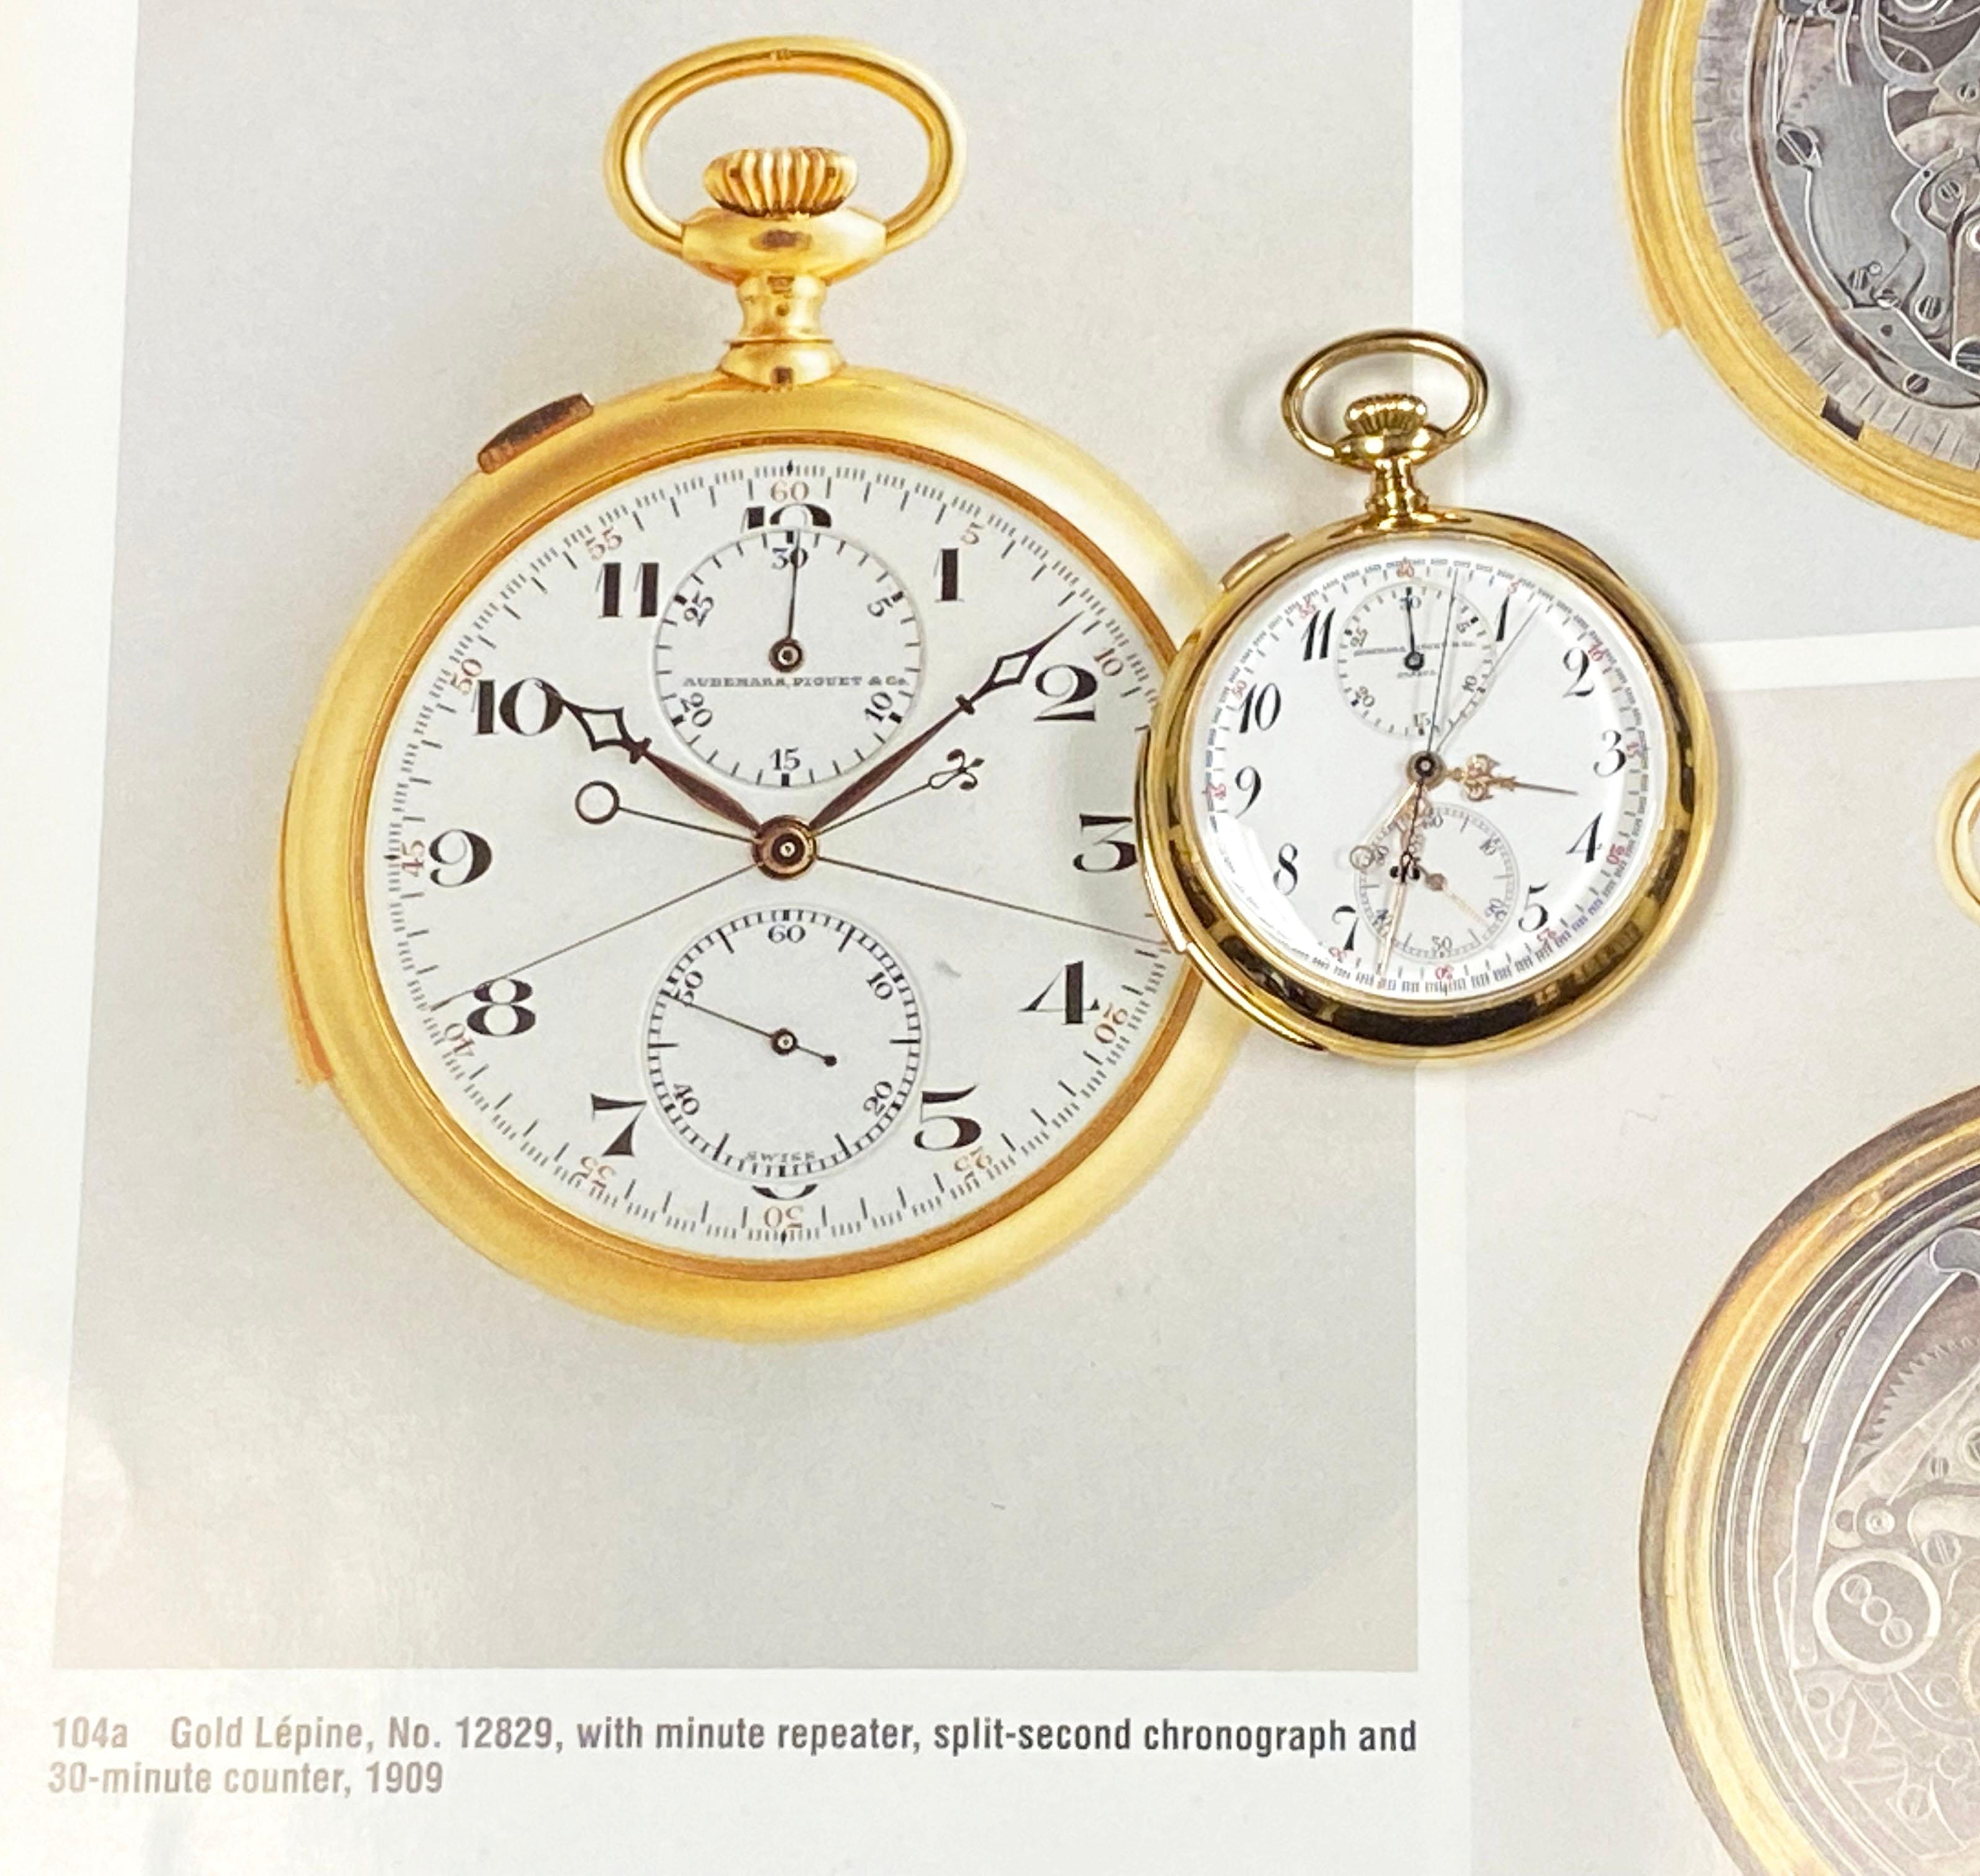 Audemars Piguet Minutenrepetition Chronograph Taschenuhr Historische Präsentation 1